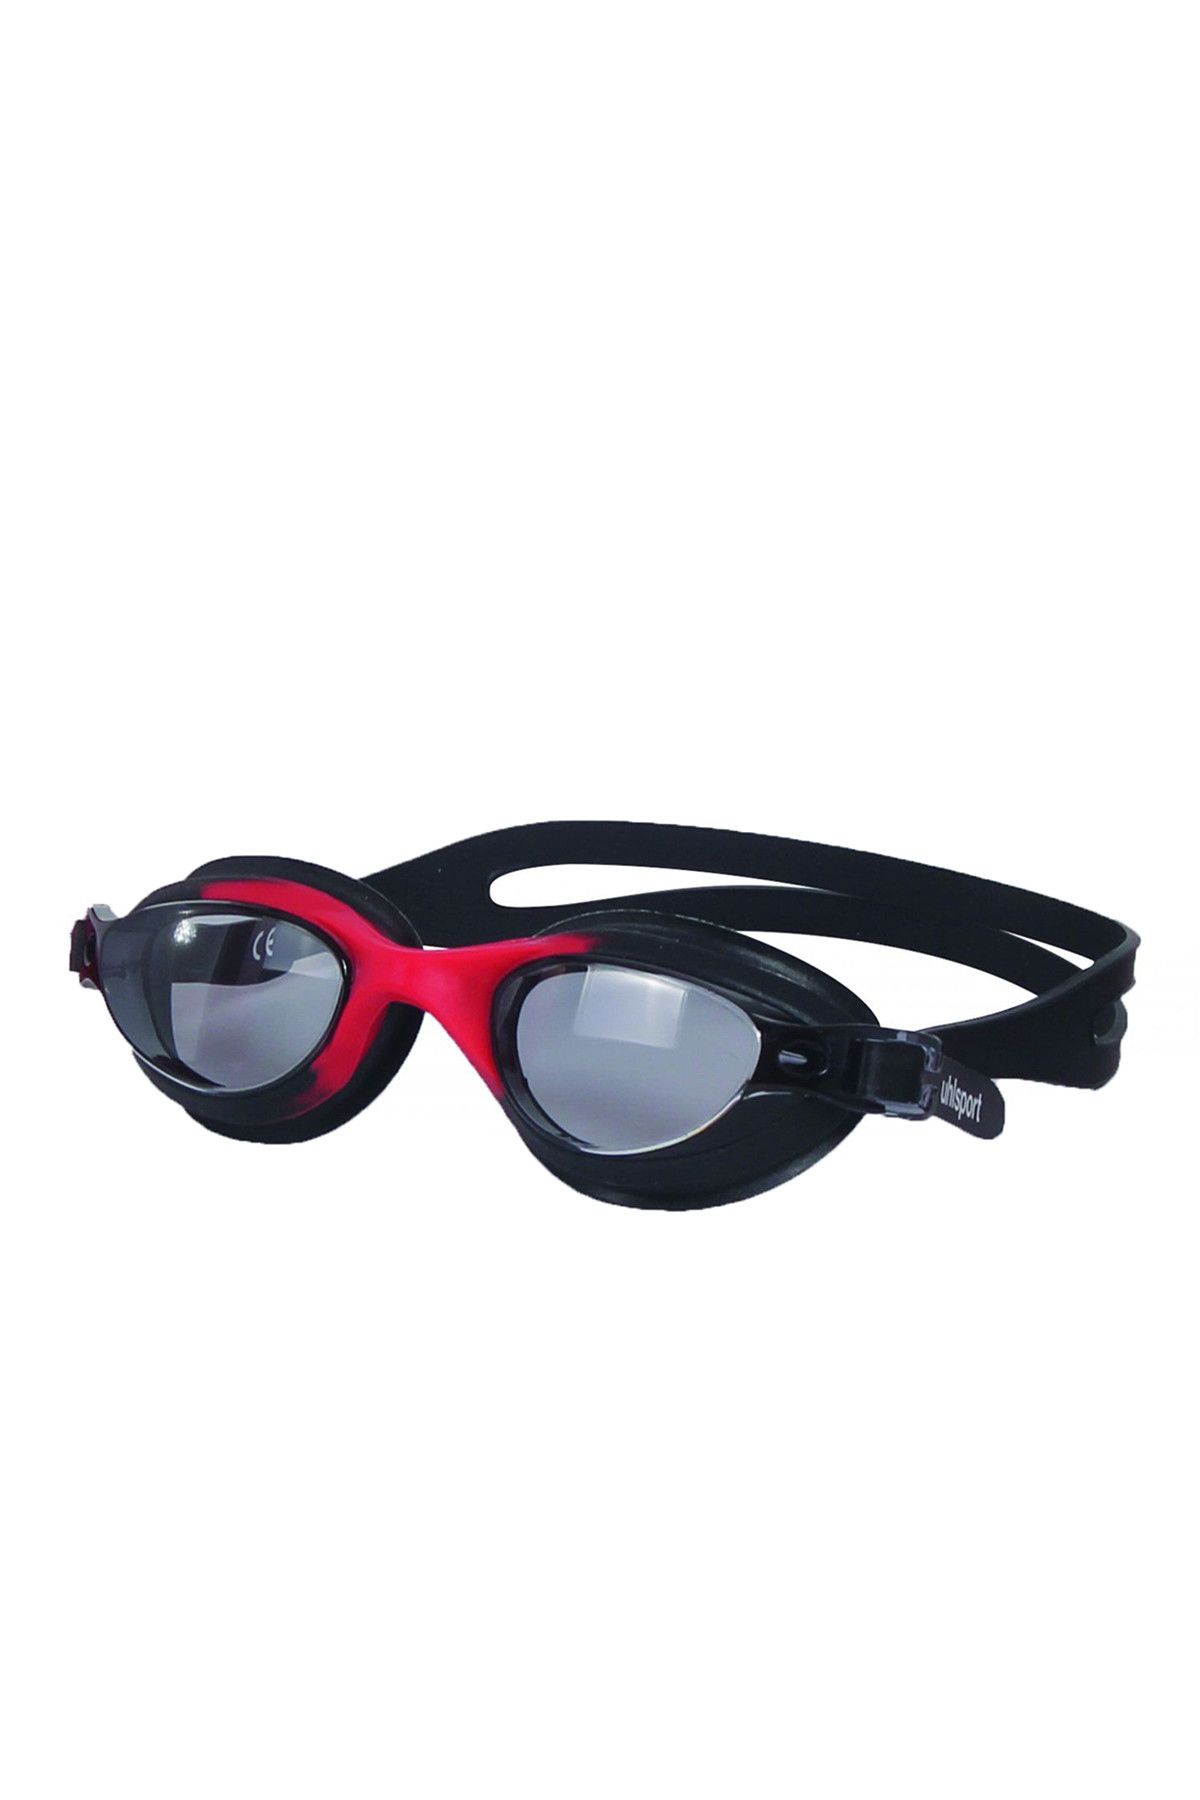 uhlsport Unisex Yüzücü Gözlüğü -  - 12.20.005.001.036.005